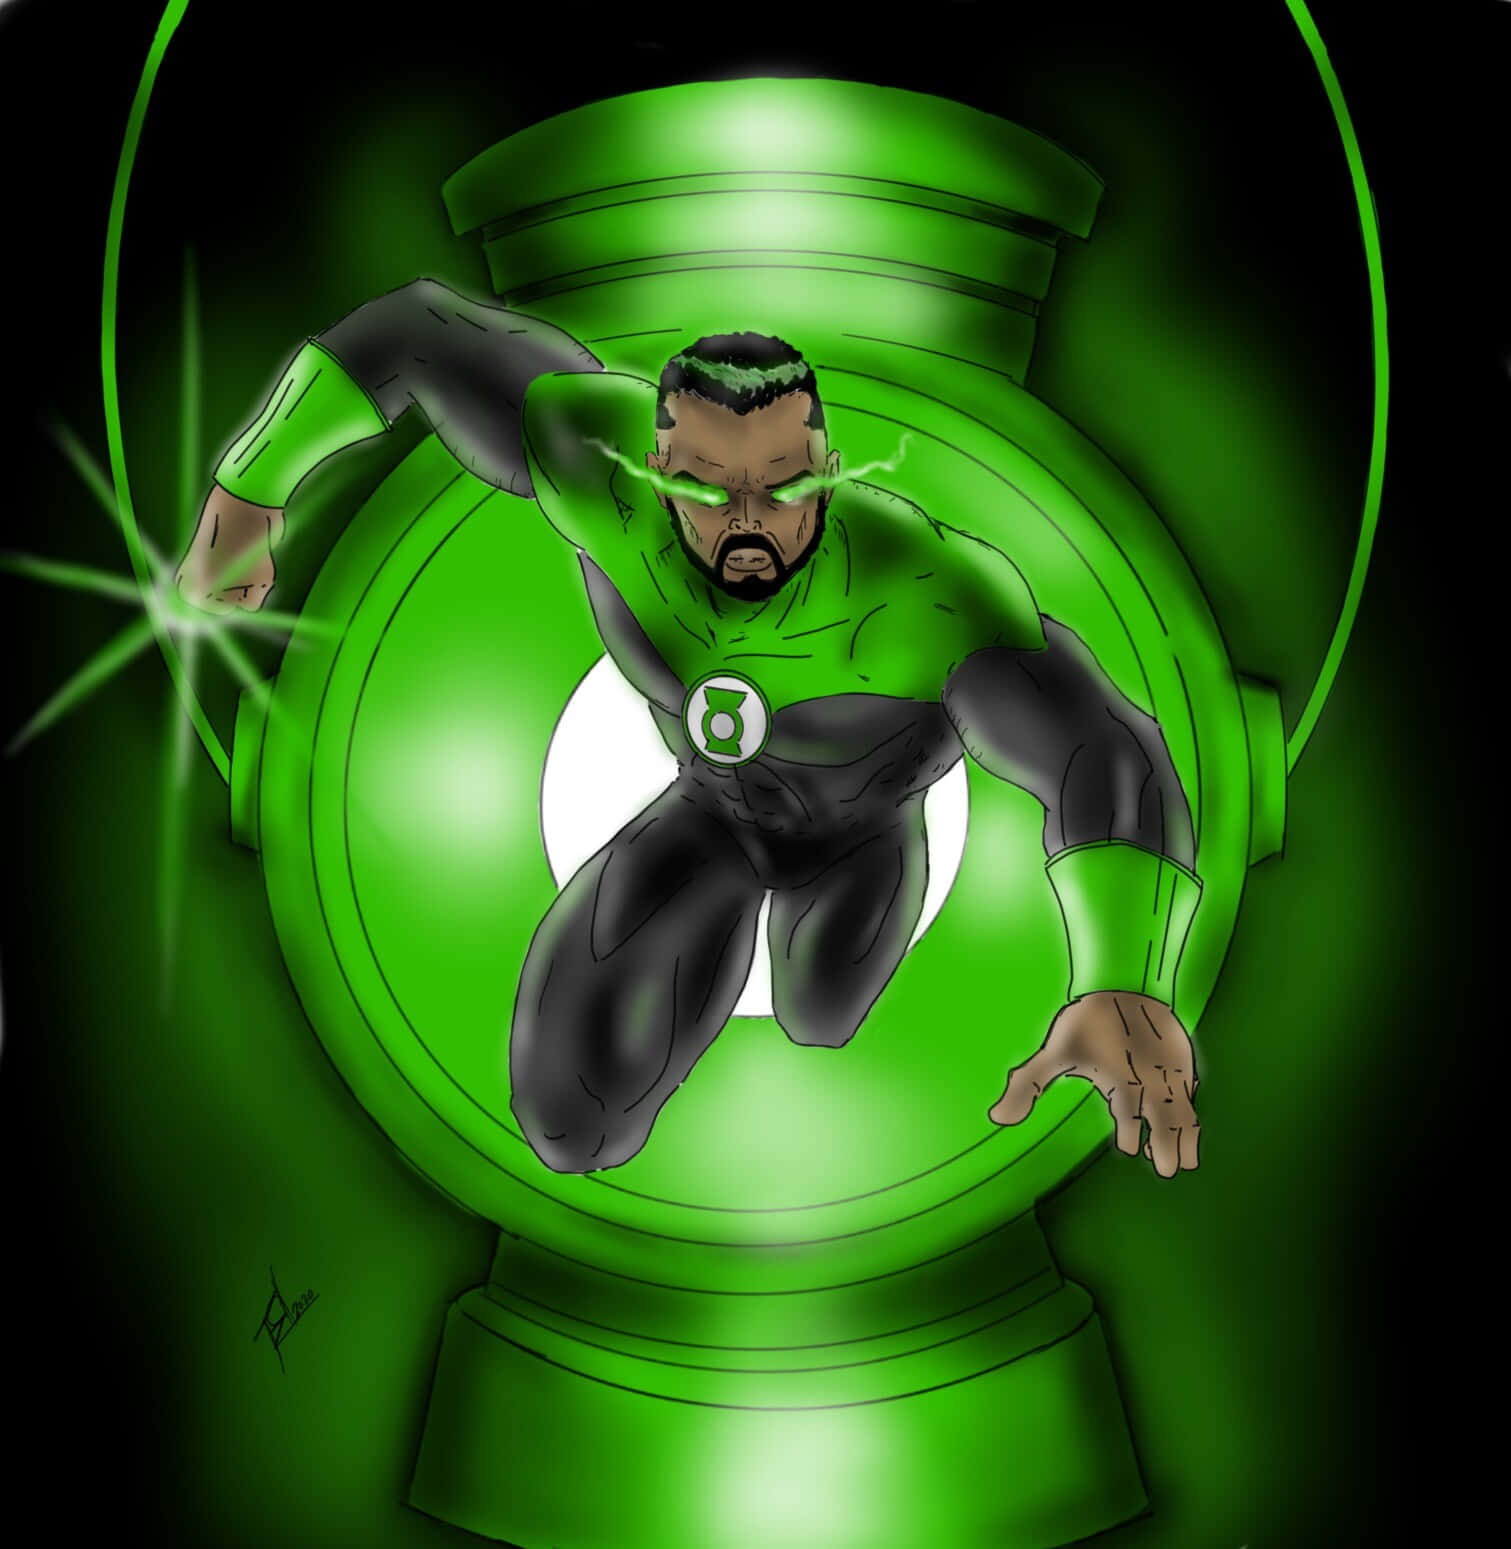 Enmedlem Av Green Lantern Corps Som Använder En Kraftfull Kraftring.